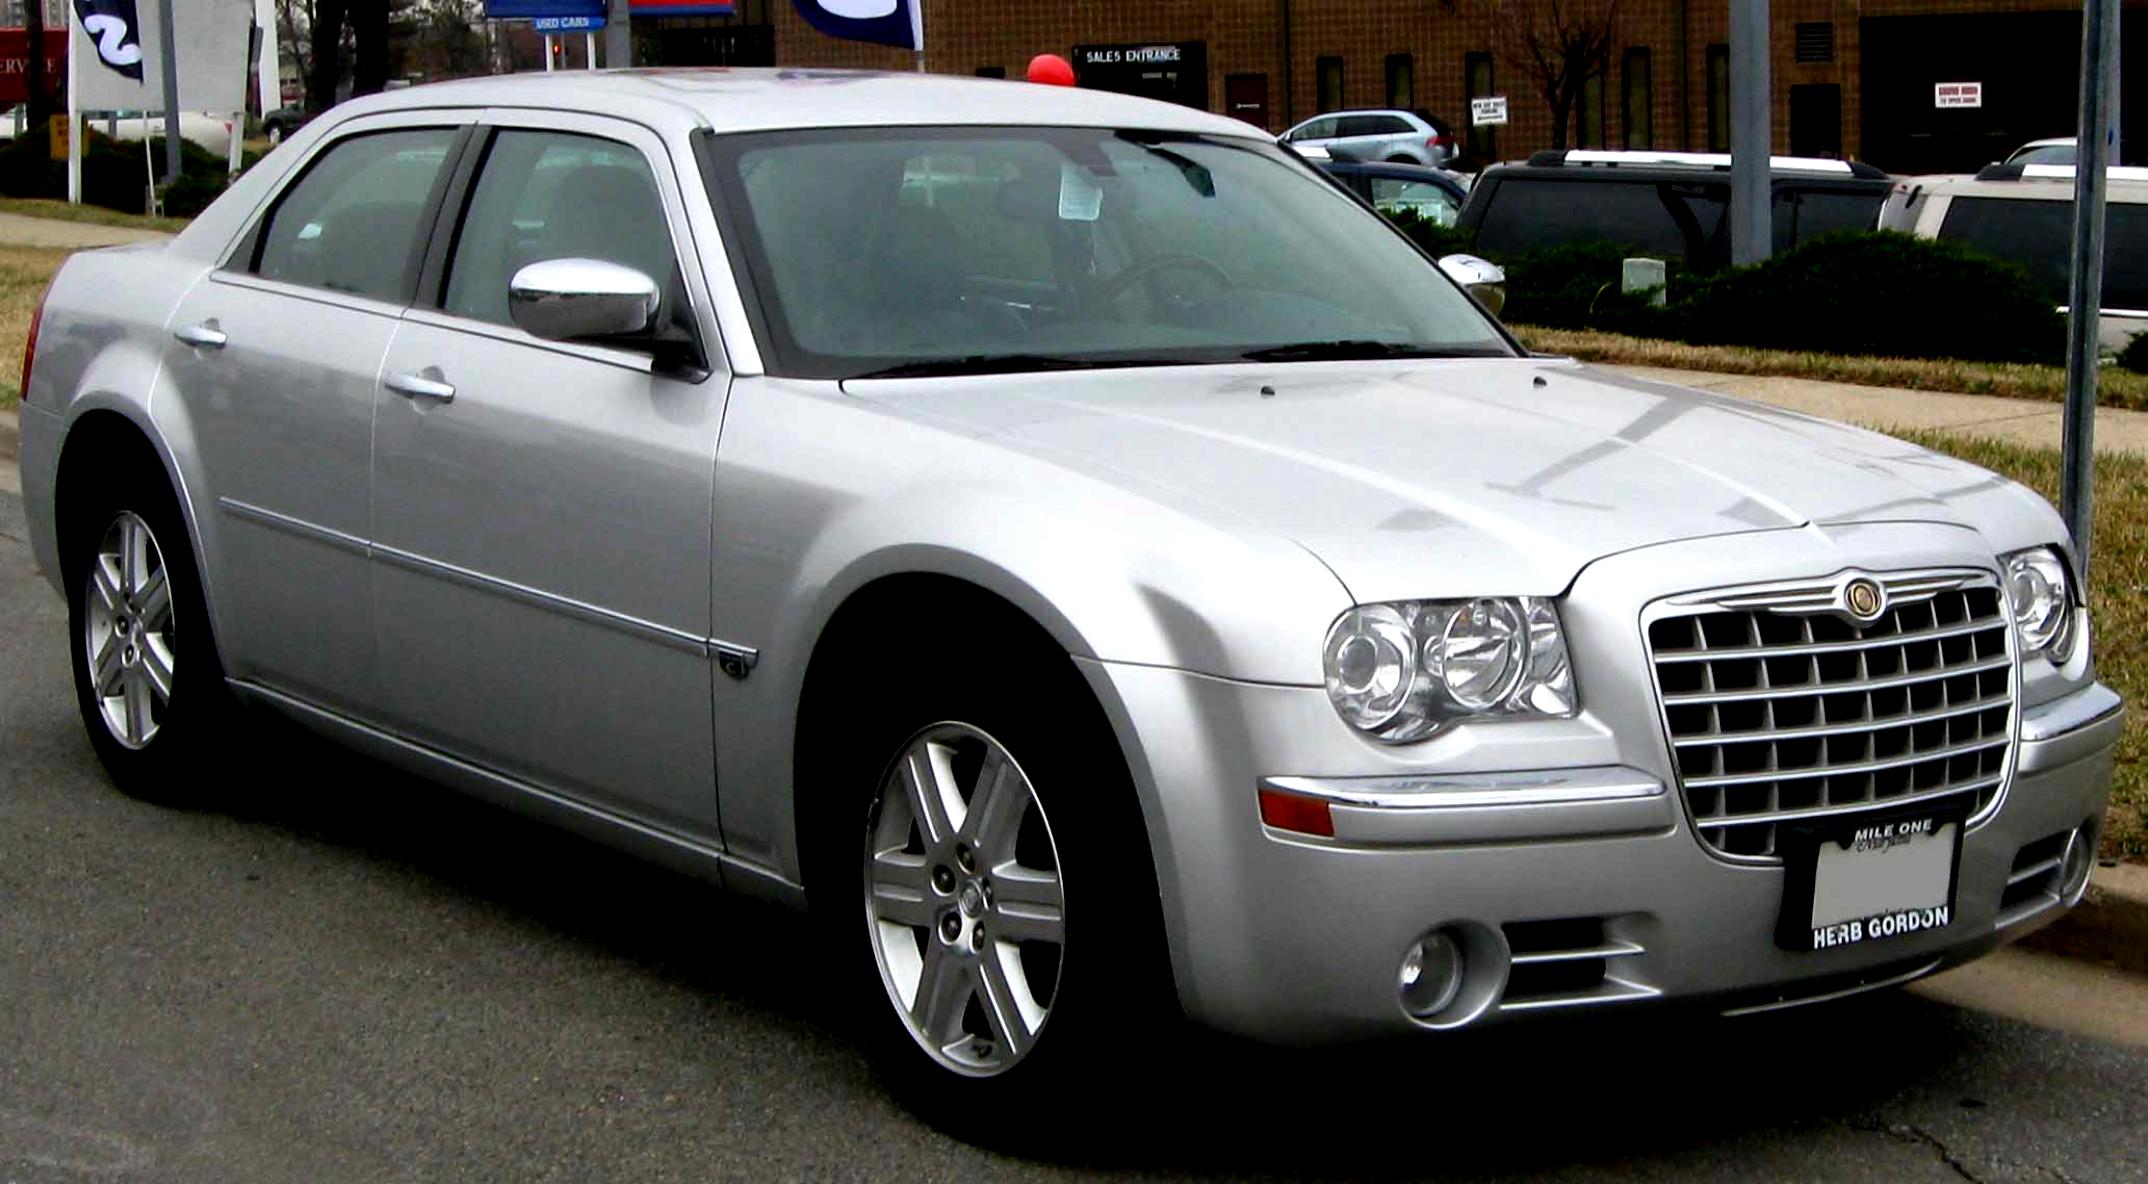 Chrysler 300C 2004 on